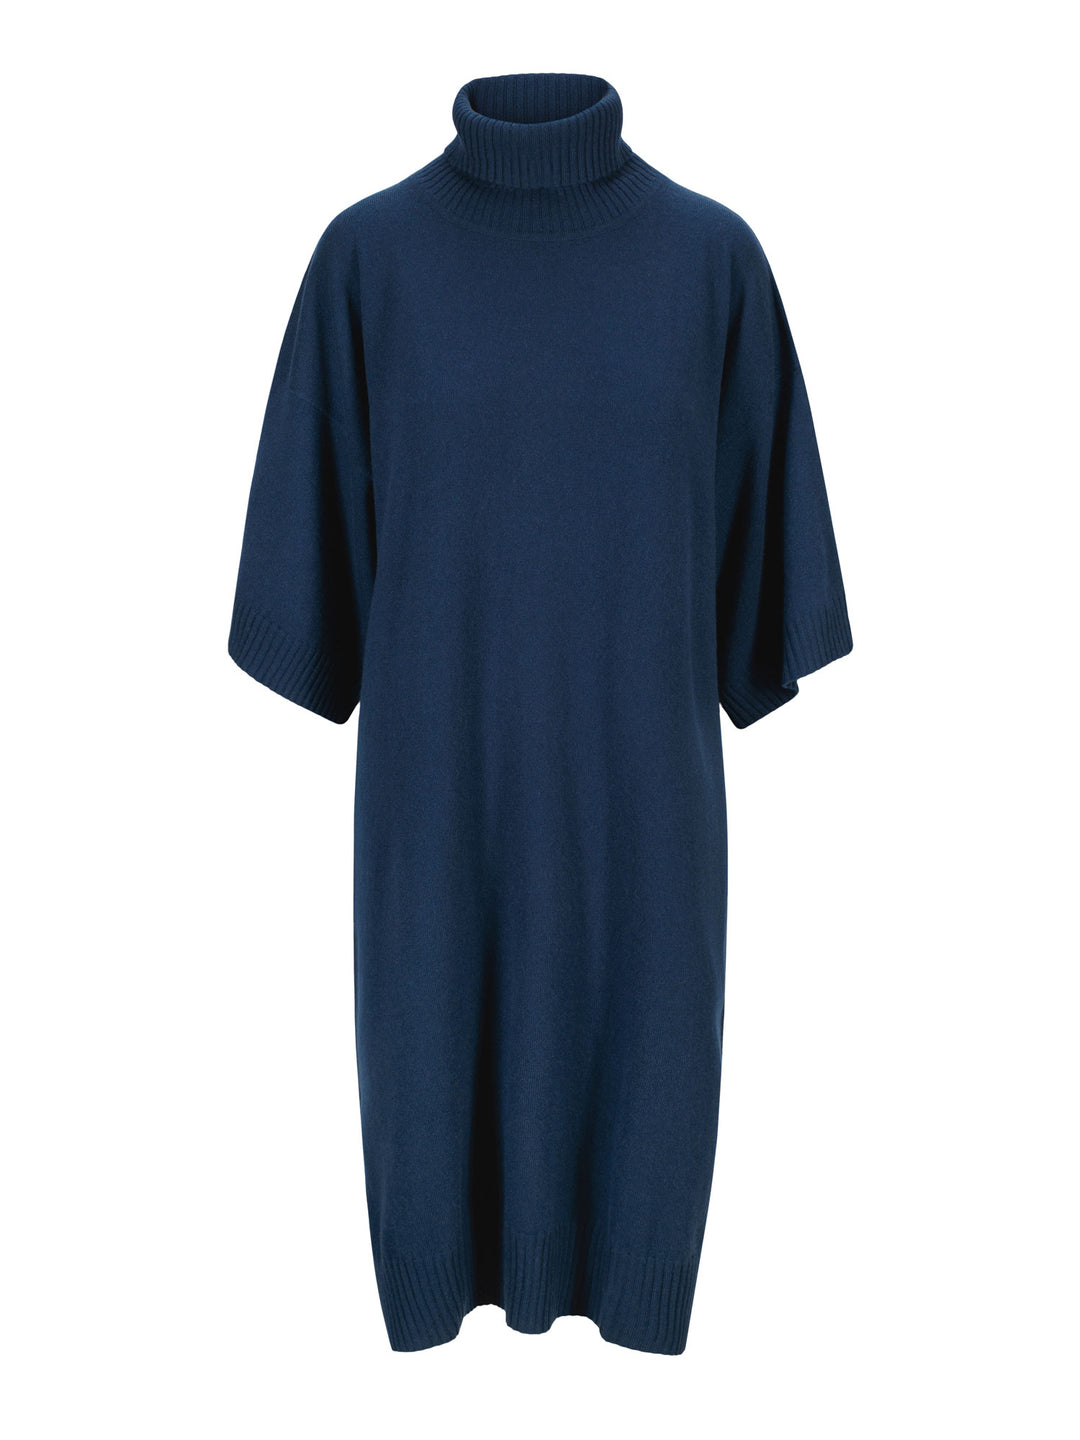 Kashmirkjole Breeze strikket i 100% kashmir, ullkjole fra Kashmina i mountain blue, blå kjole